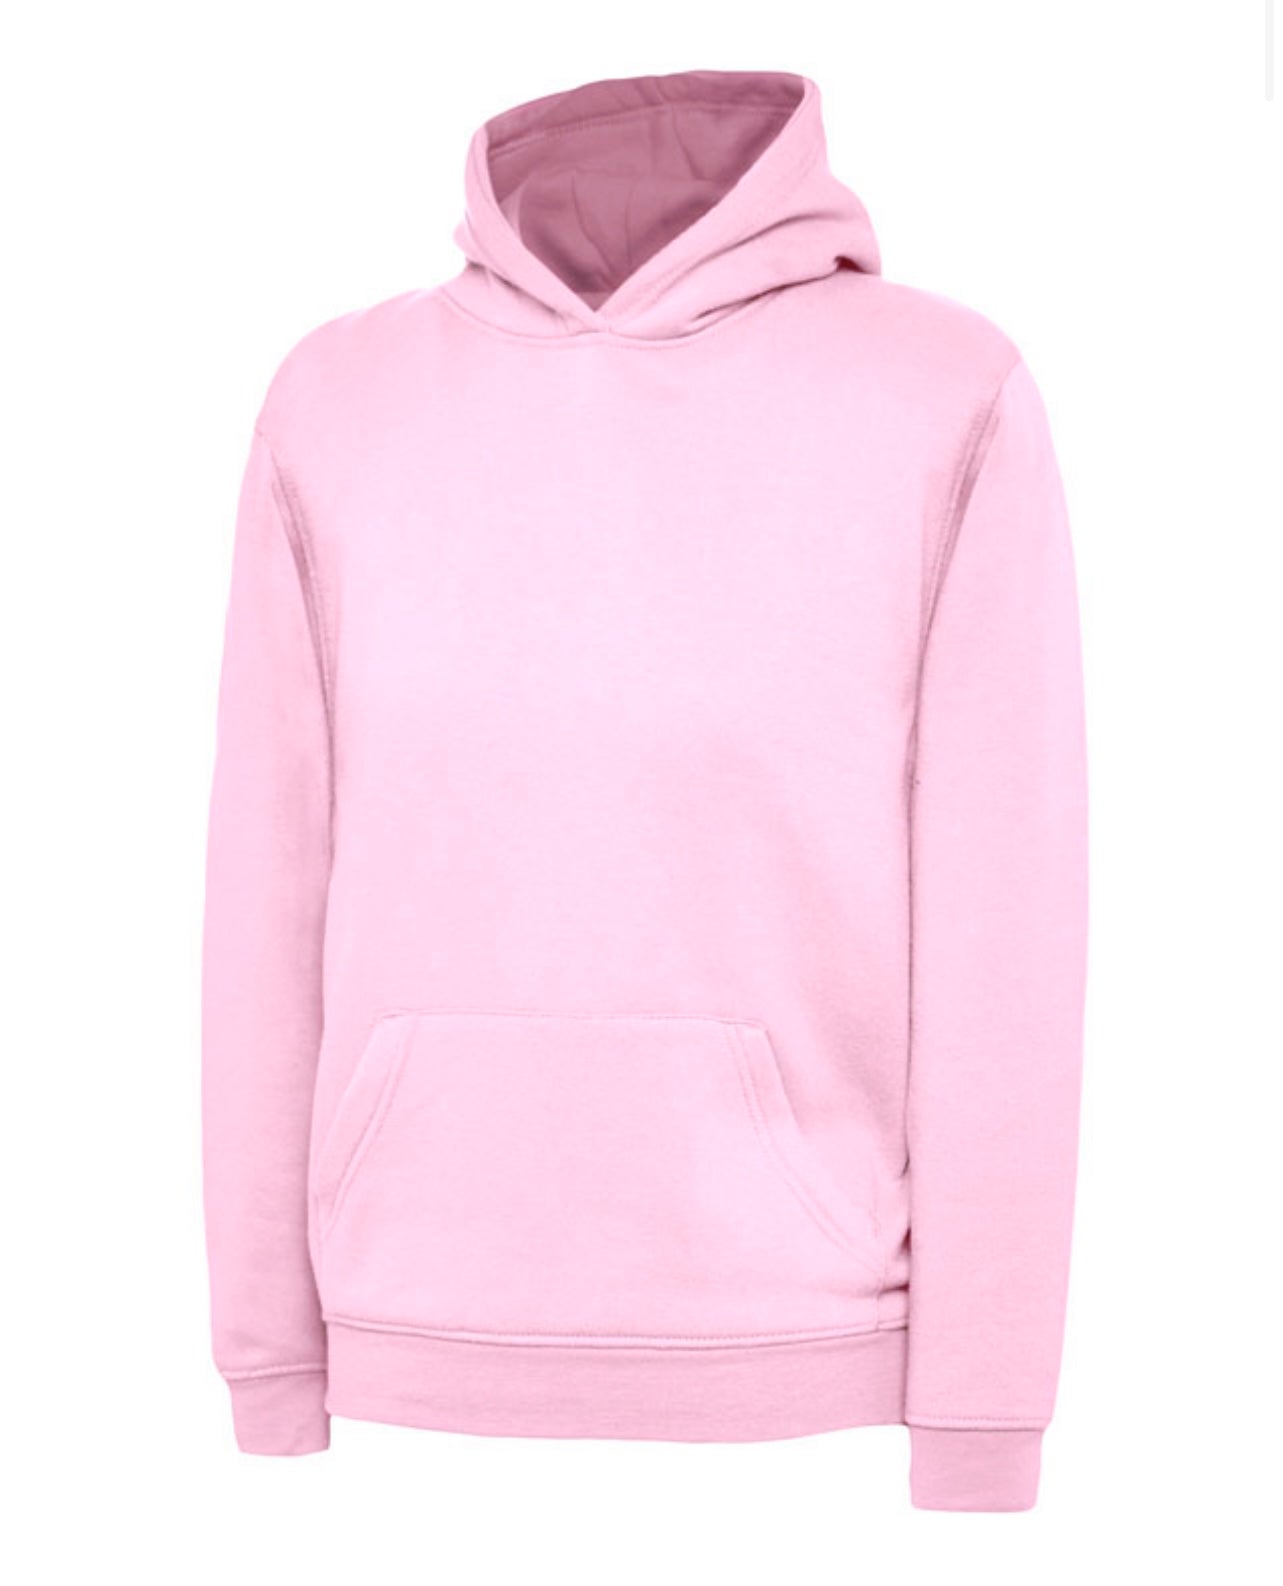 Baby pink hoodie